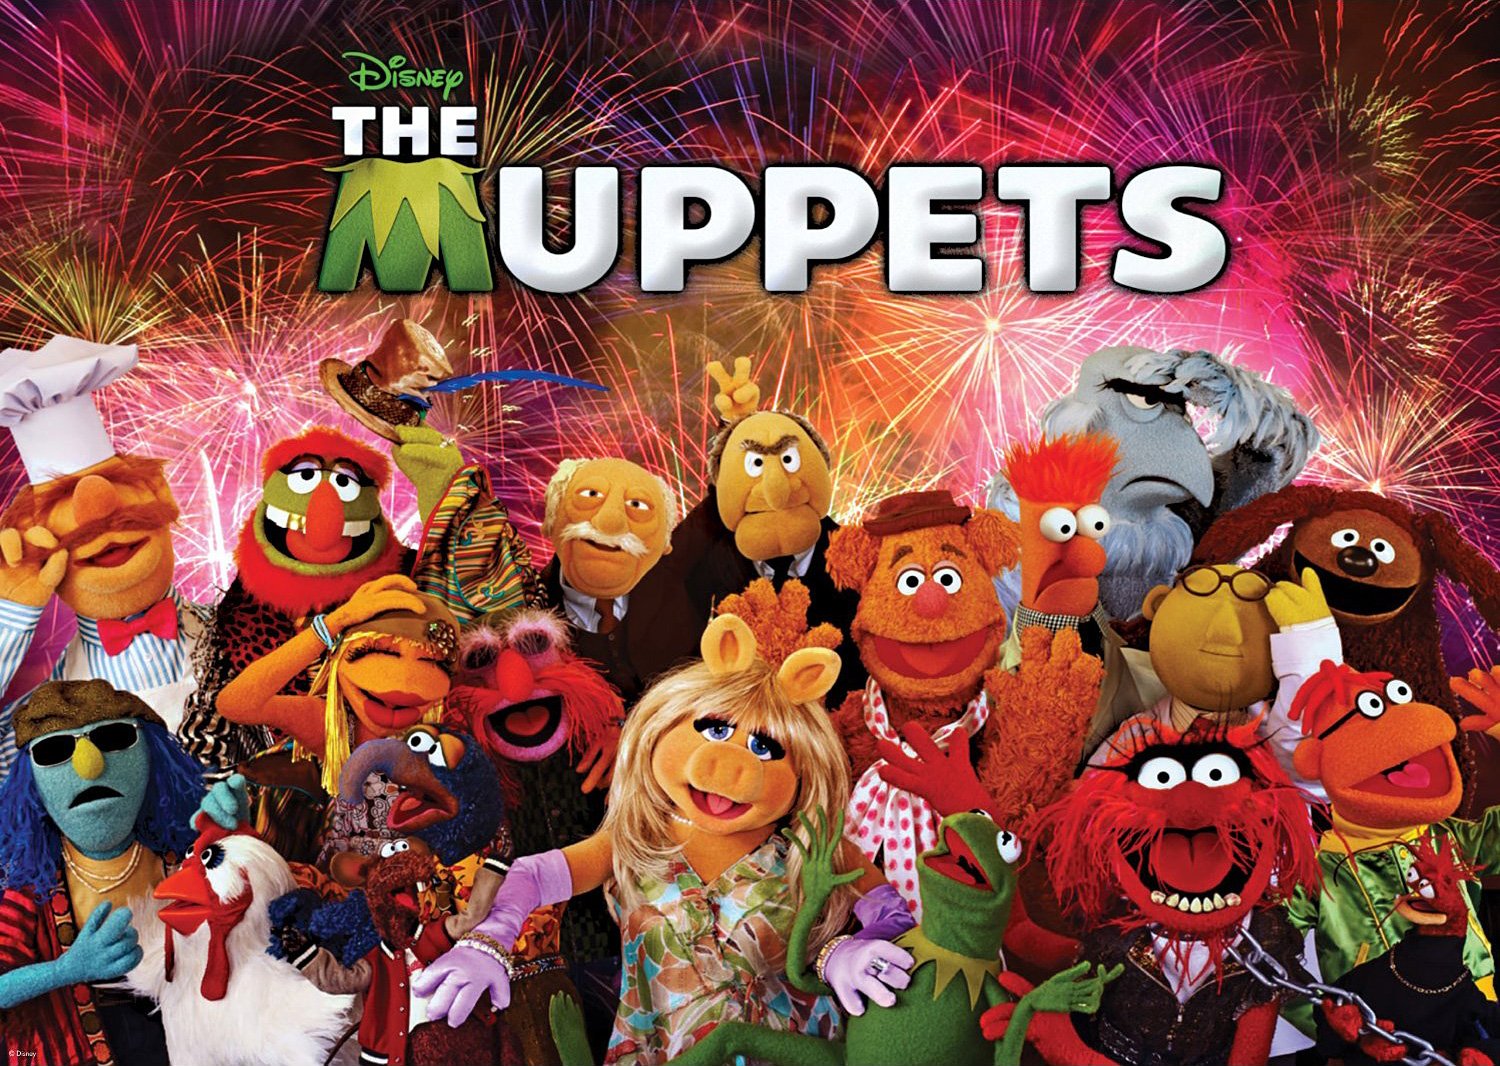 Muppet Show Wallpaper